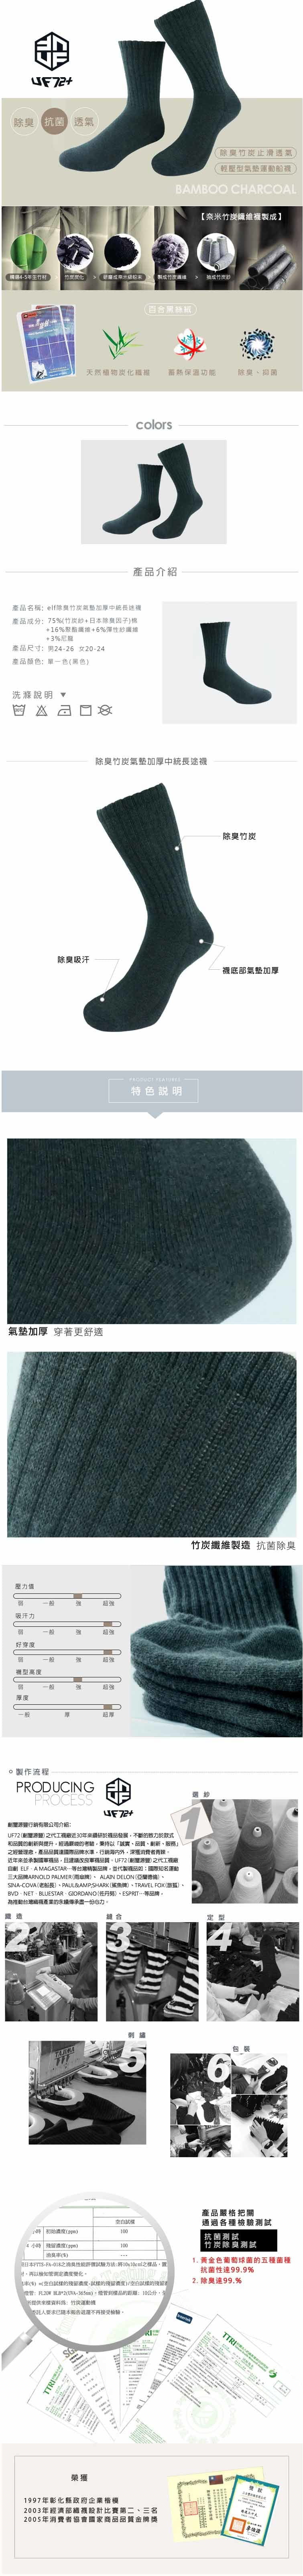 【UF72+】UF5804 elf除臭竹炭氣墊加厚中統長途襪 1